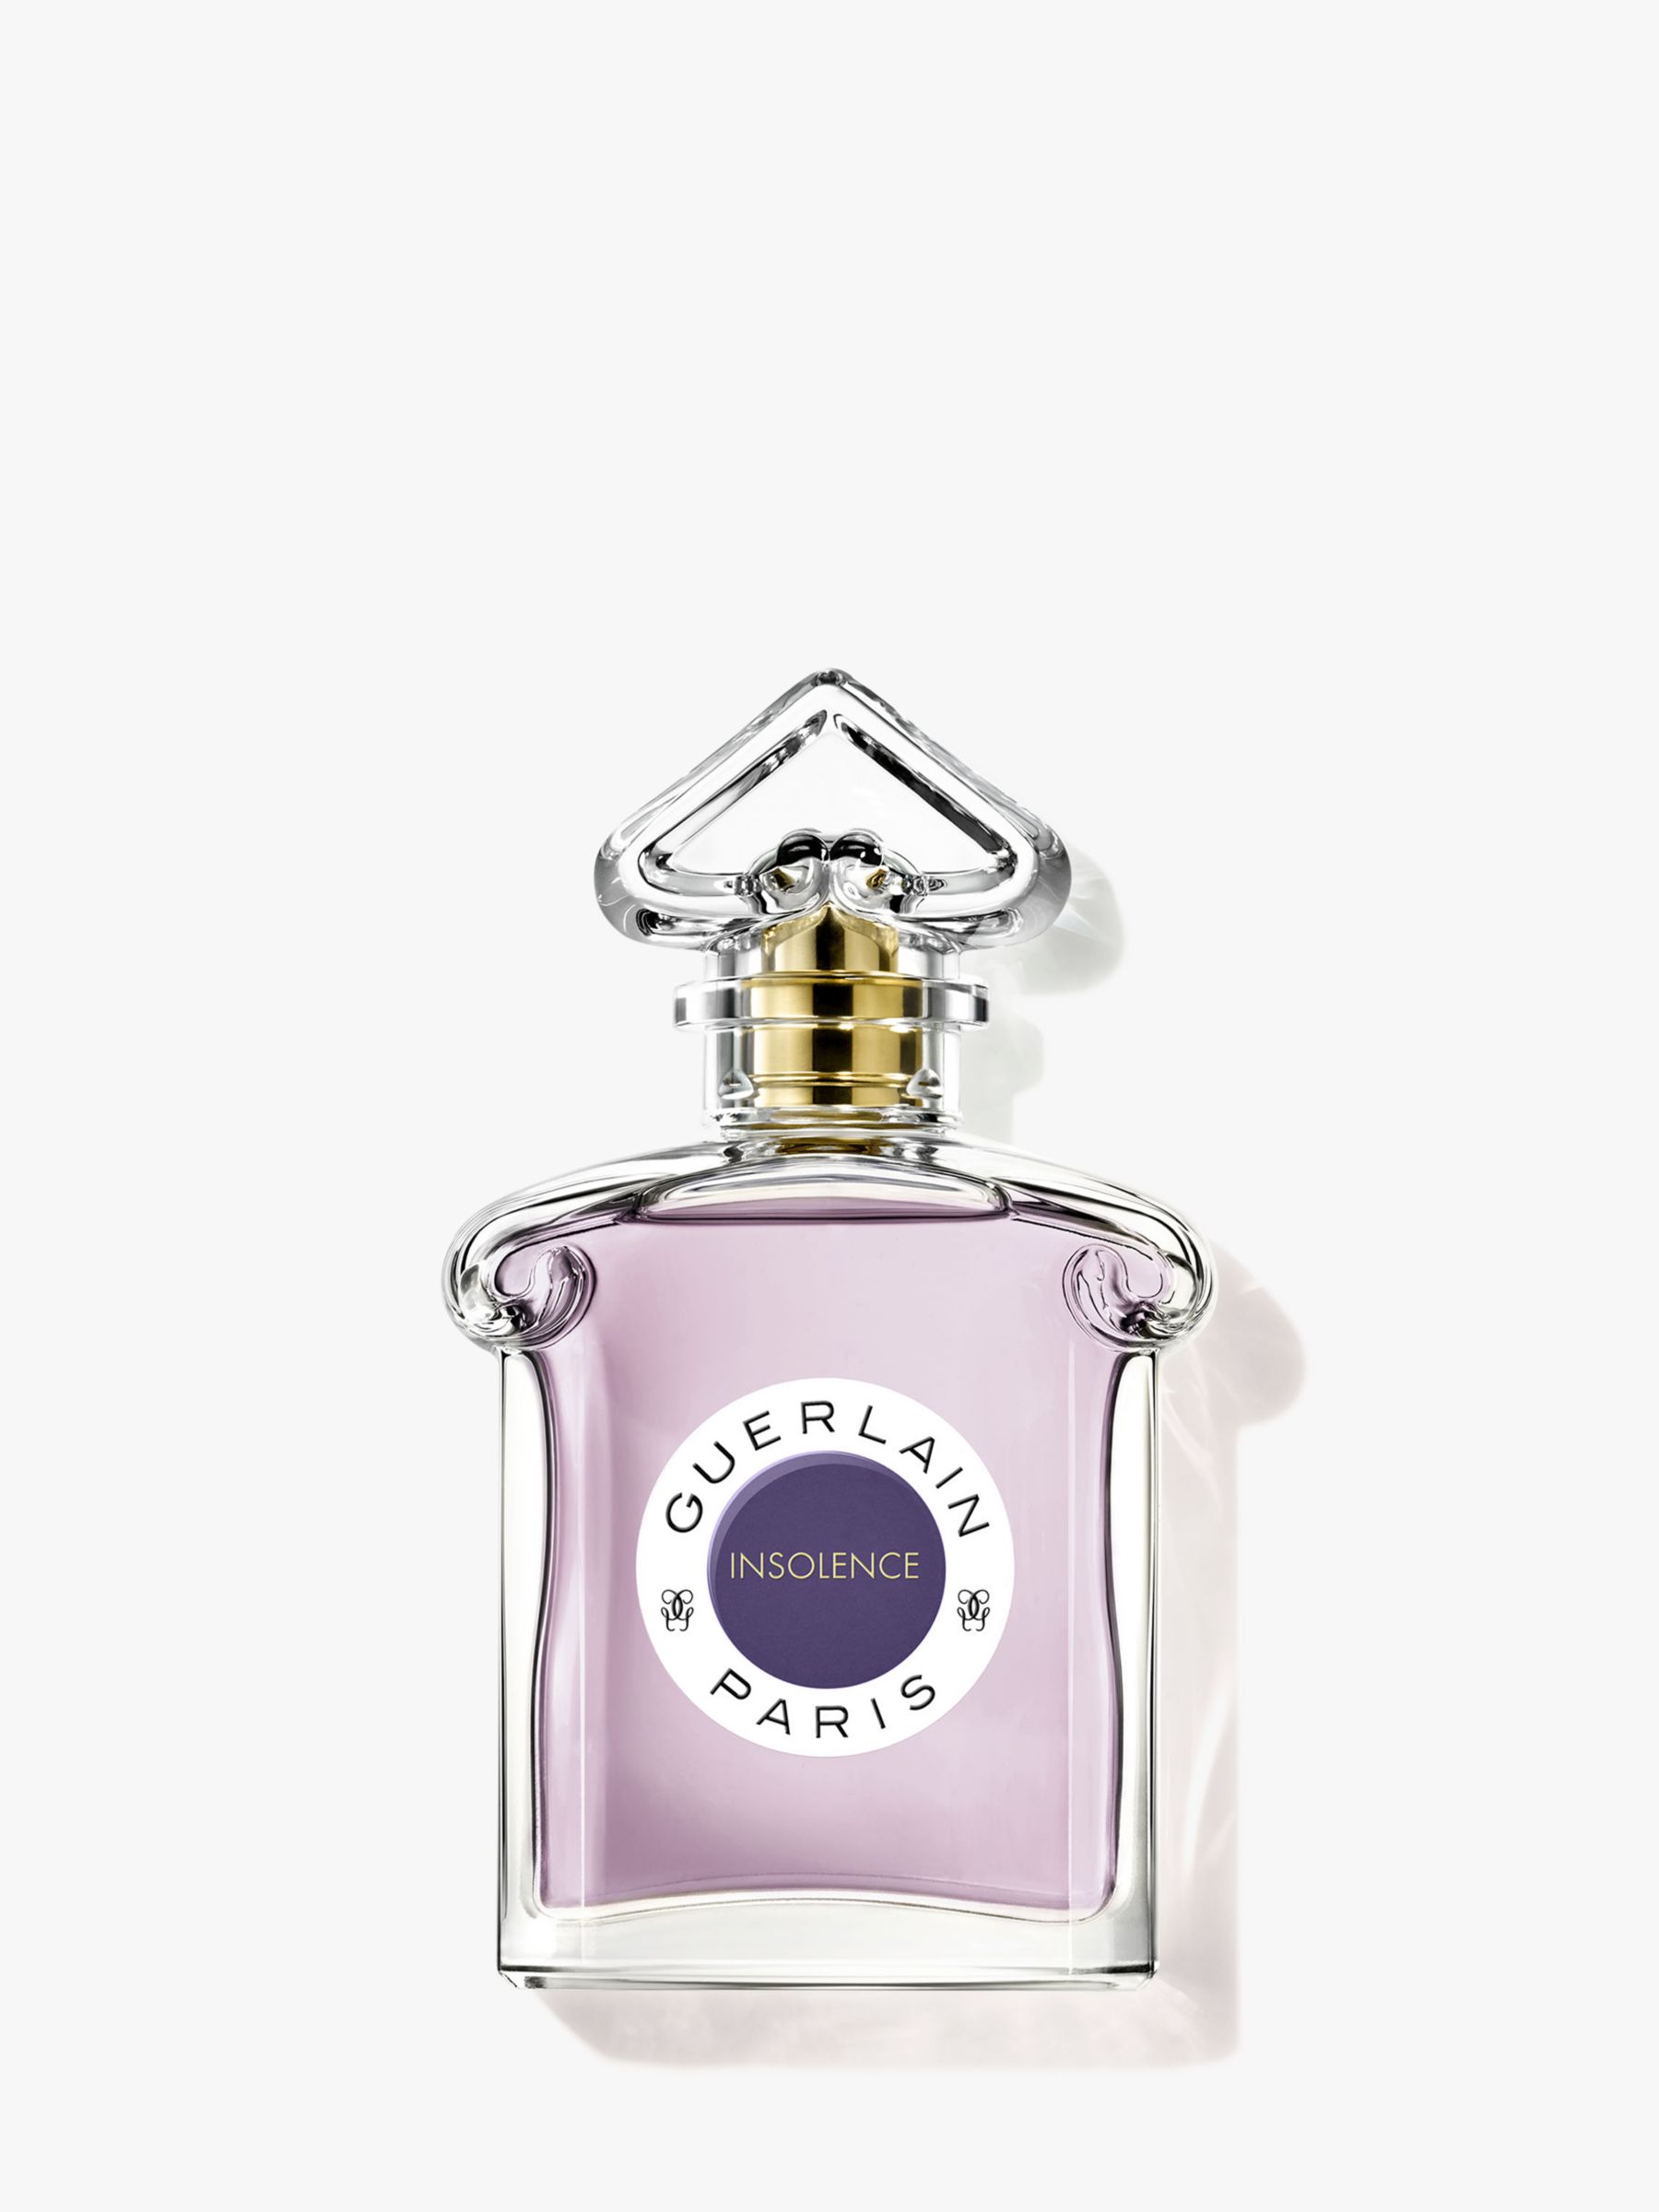 Guerlain Insolence Eau de Parfum, 75ml 1